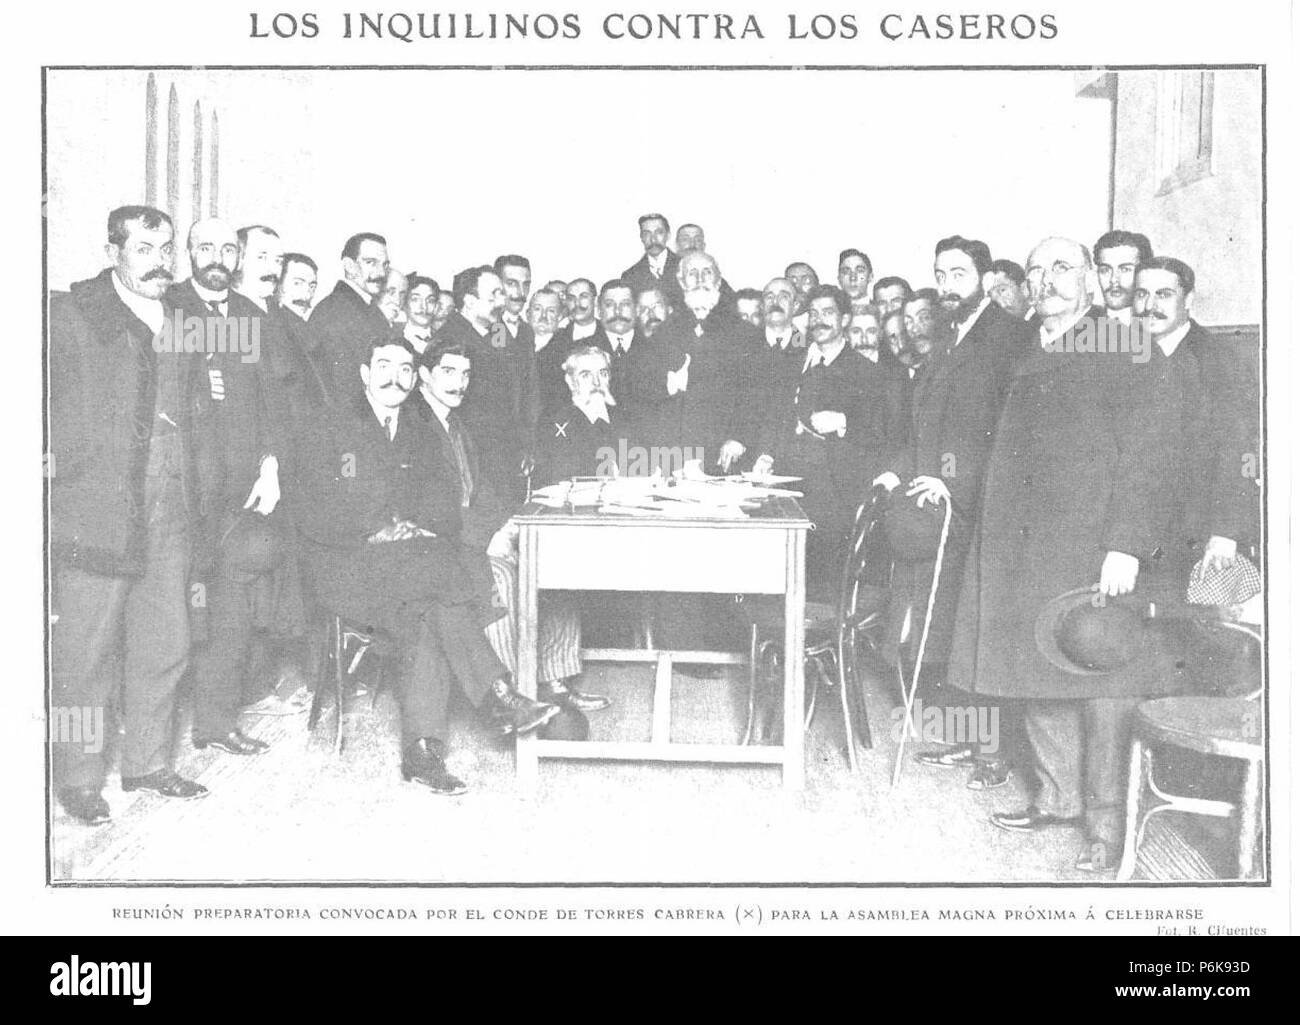 1909-01-20, Actualidades, Los inquilinos contra los caseros, Cifuentes. Foto Stock